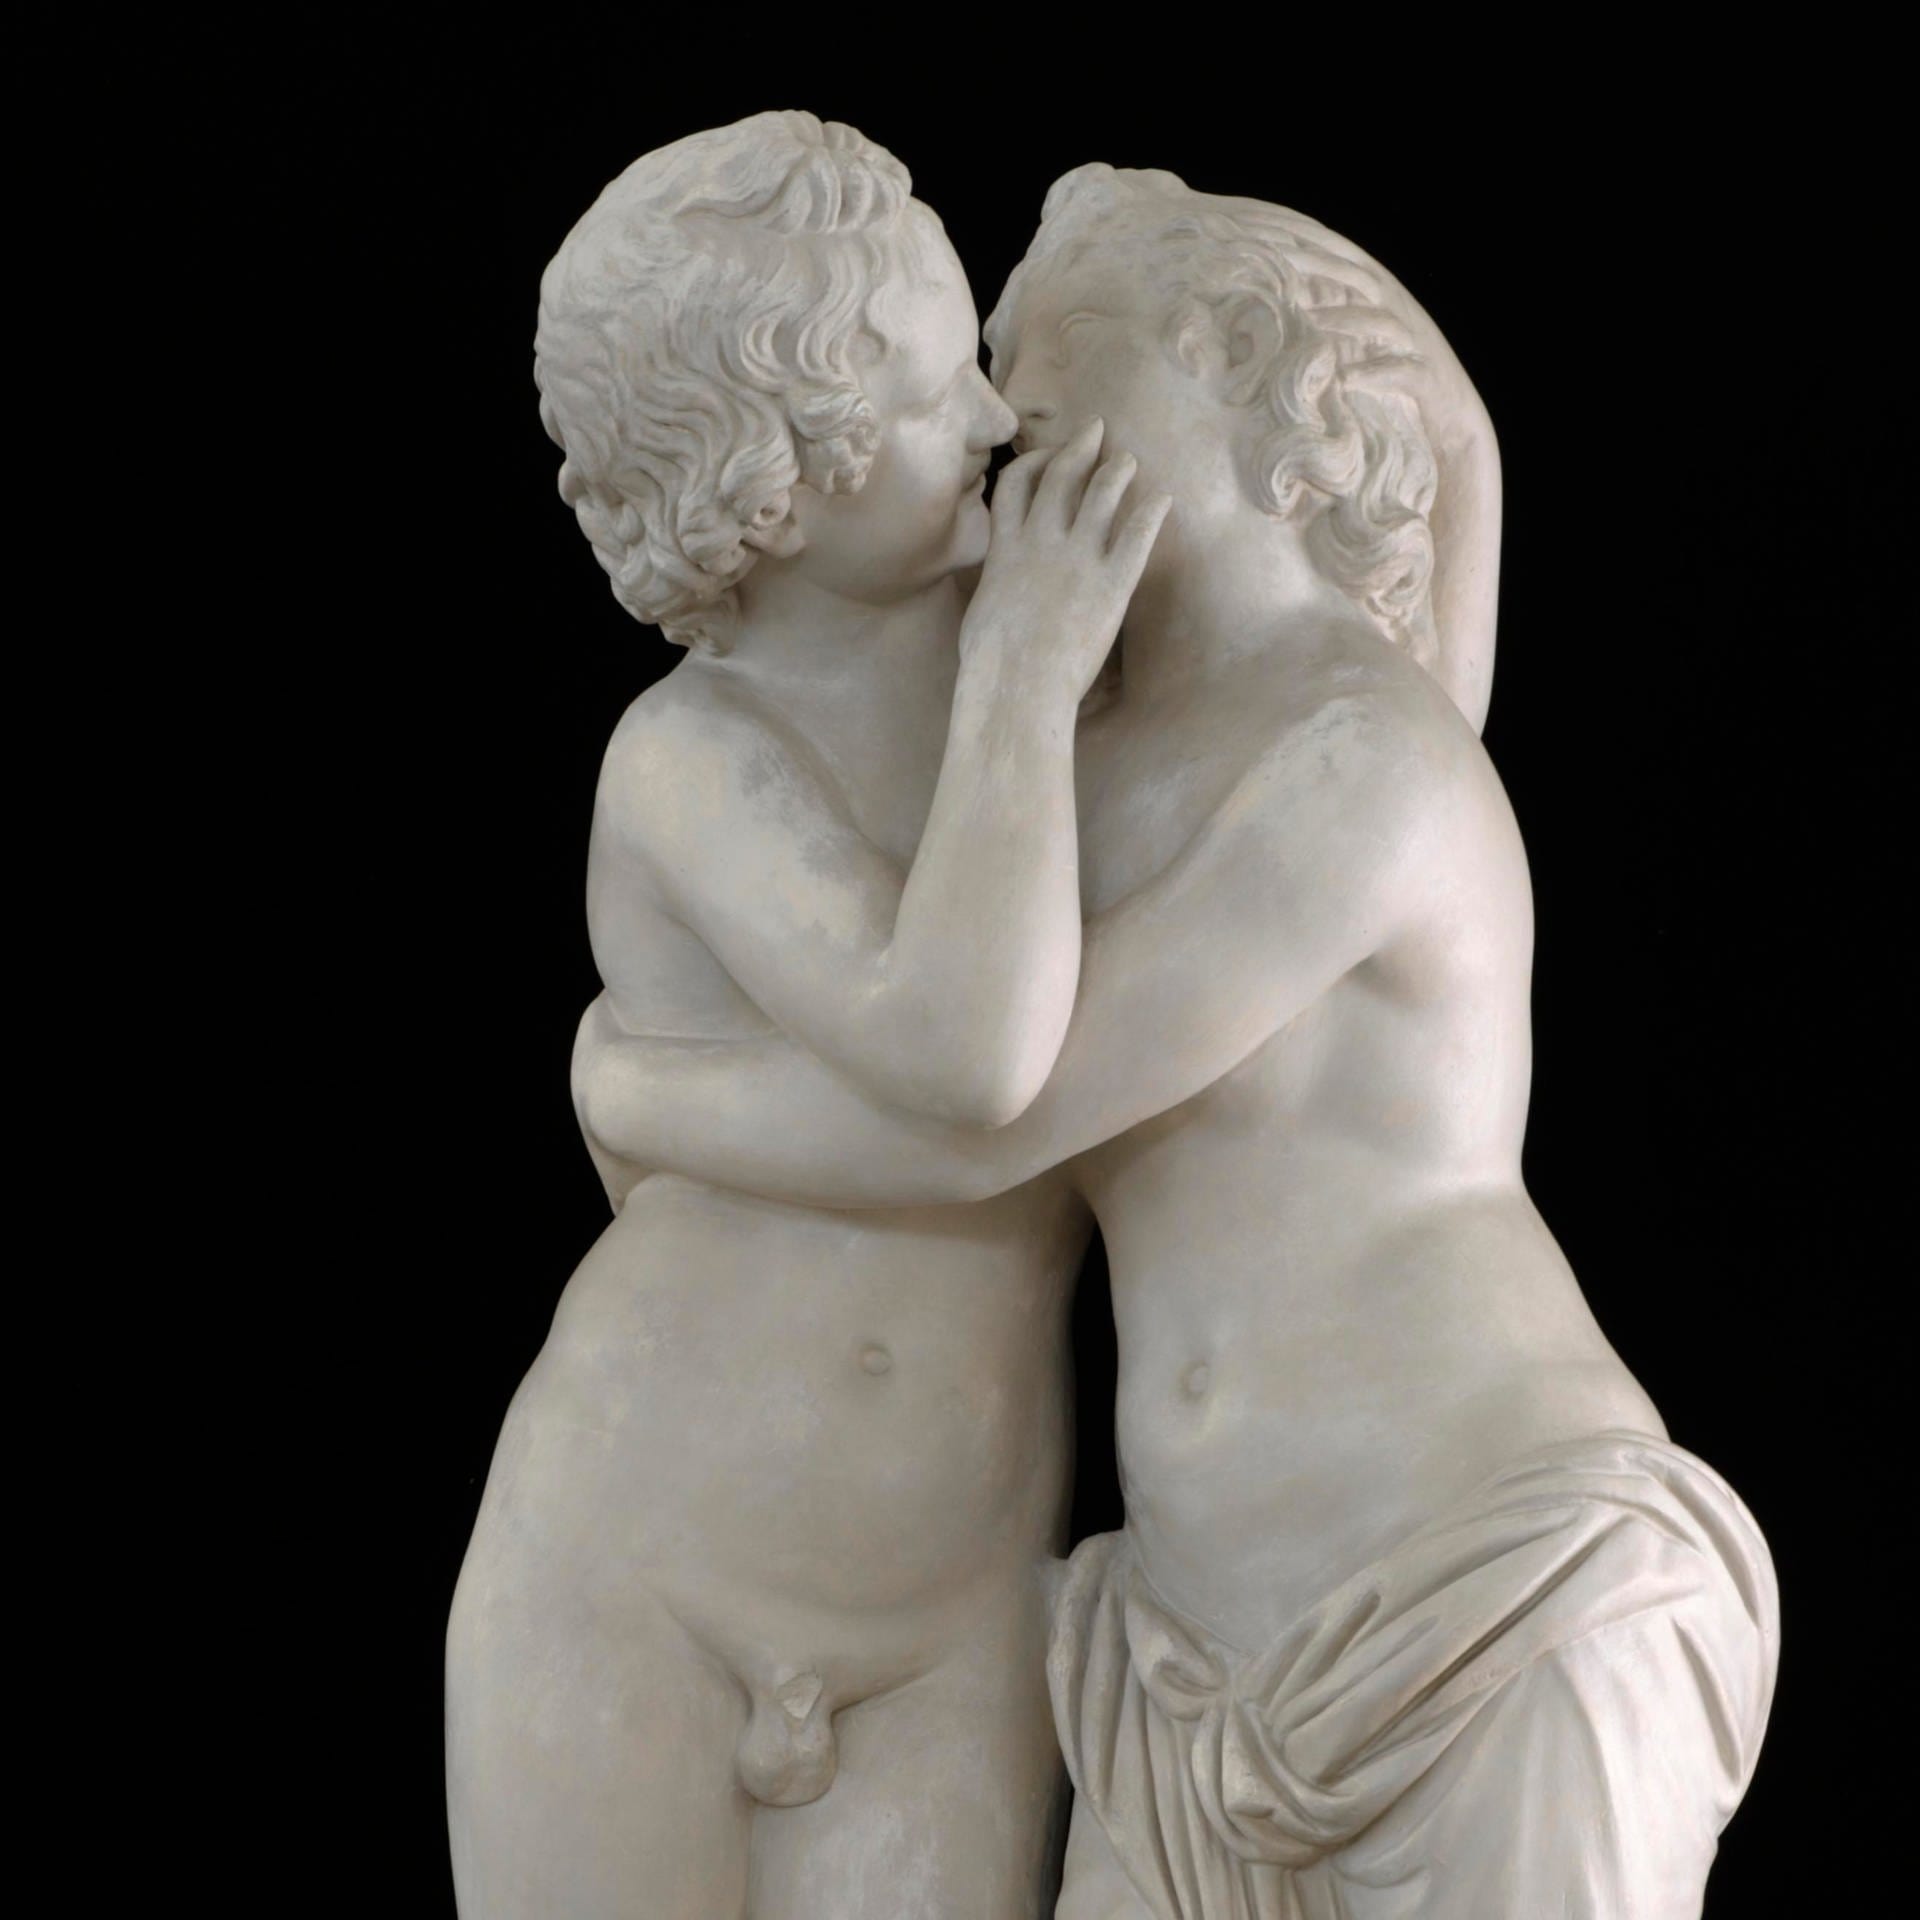 Liebe bei den alten Griechen und Römern | Geschichte der Liebe (1/3)